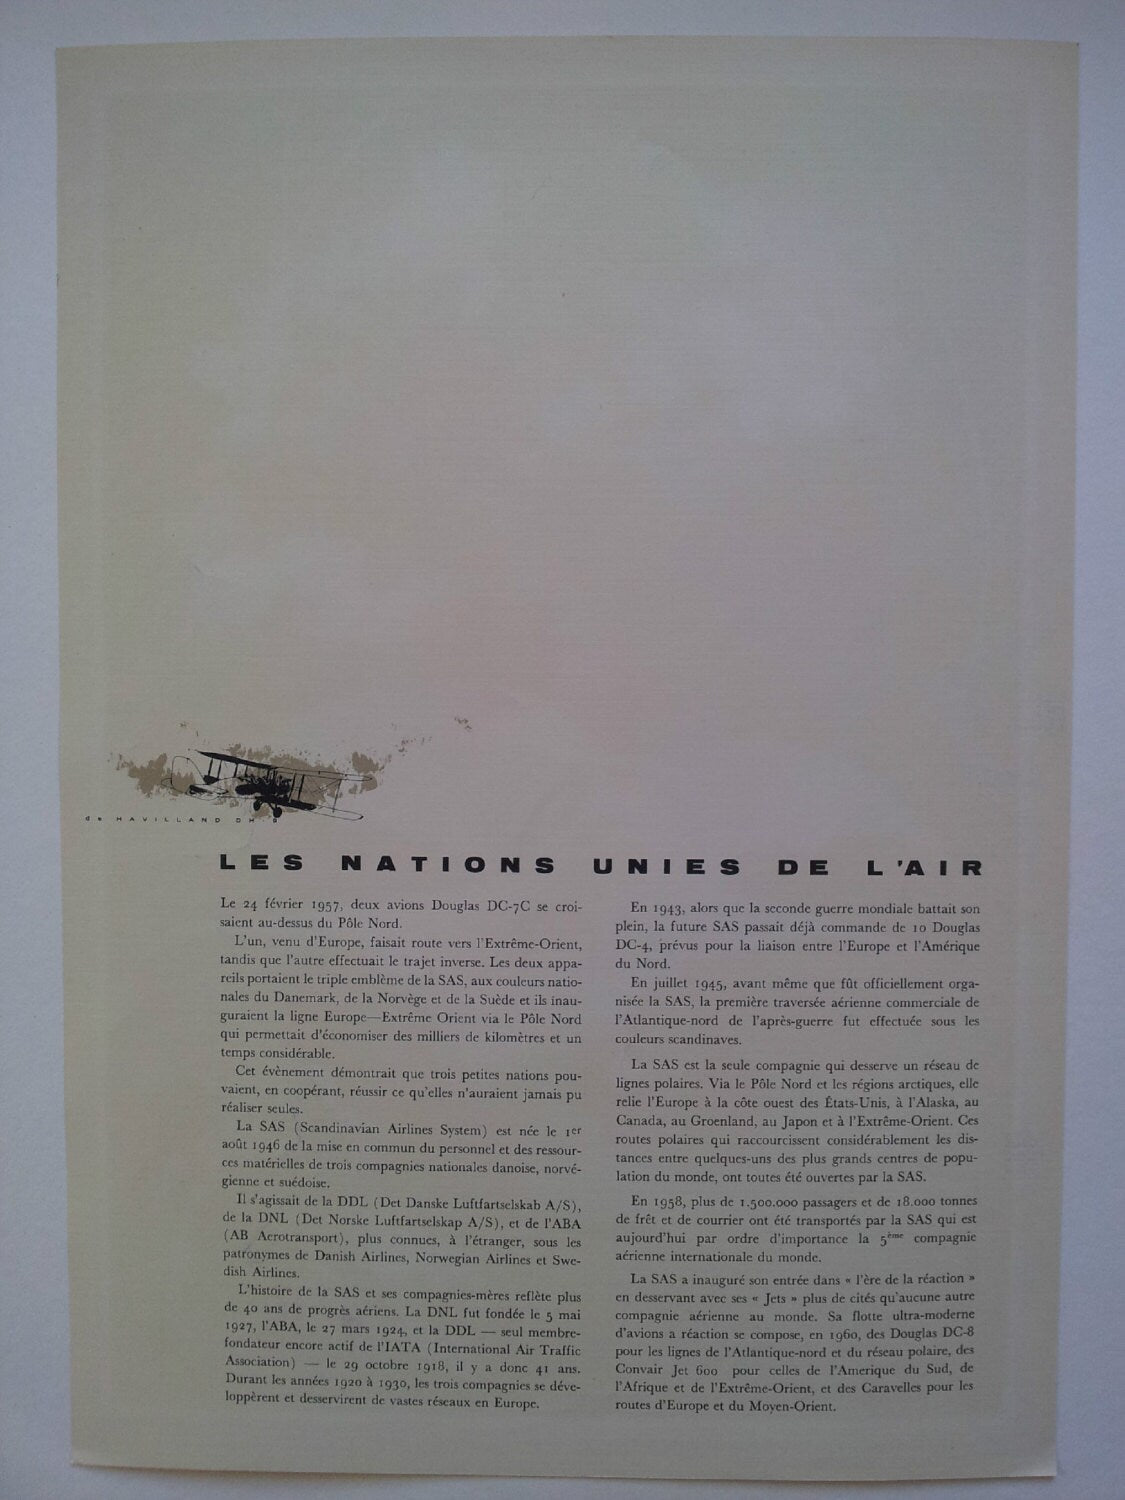 1960 SAS Airlines Poster (Jacob Christian Ellehammer) - Original Vintage Poster